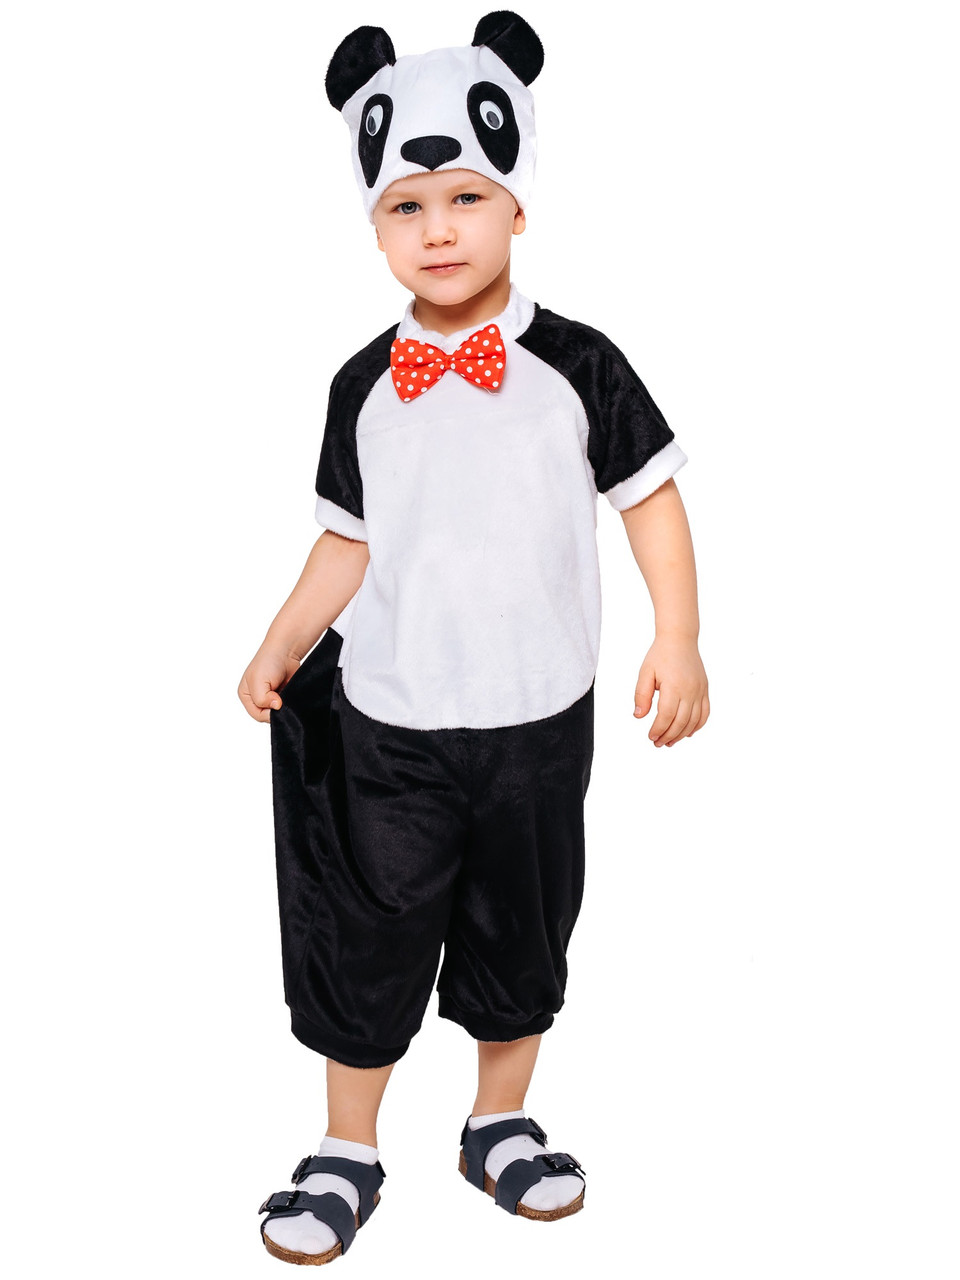 Детский карнавальный костюм Панда Пуговка 912 к-17, фото 1